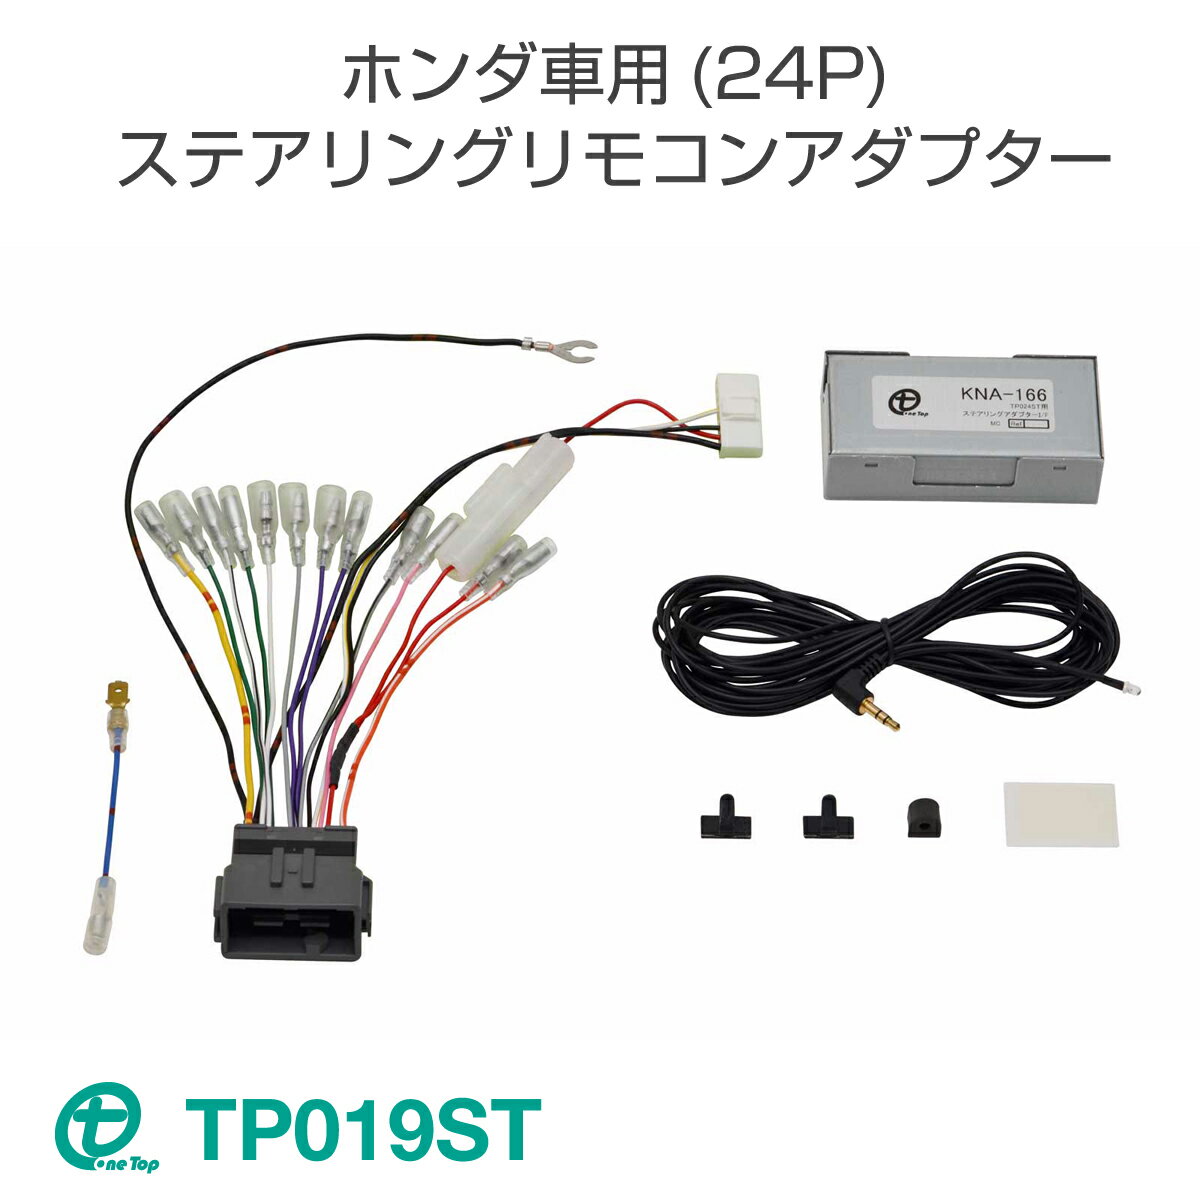 ワントップ/OneTop ホンダ車用(24P)ステアリングリモコンアダプター TP019ST